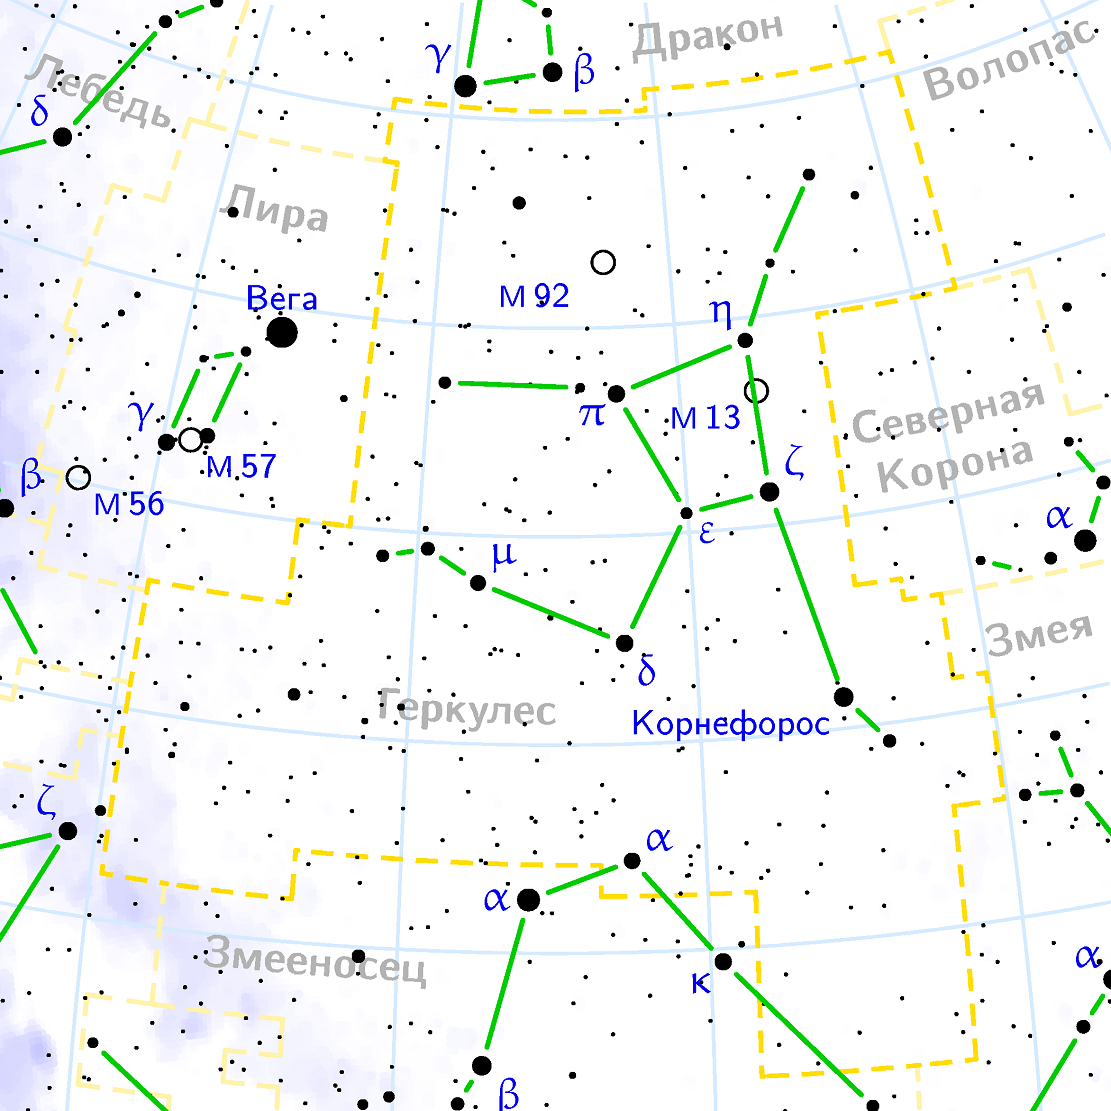 Position de l'amas M92 dans la constellation d'Hercule